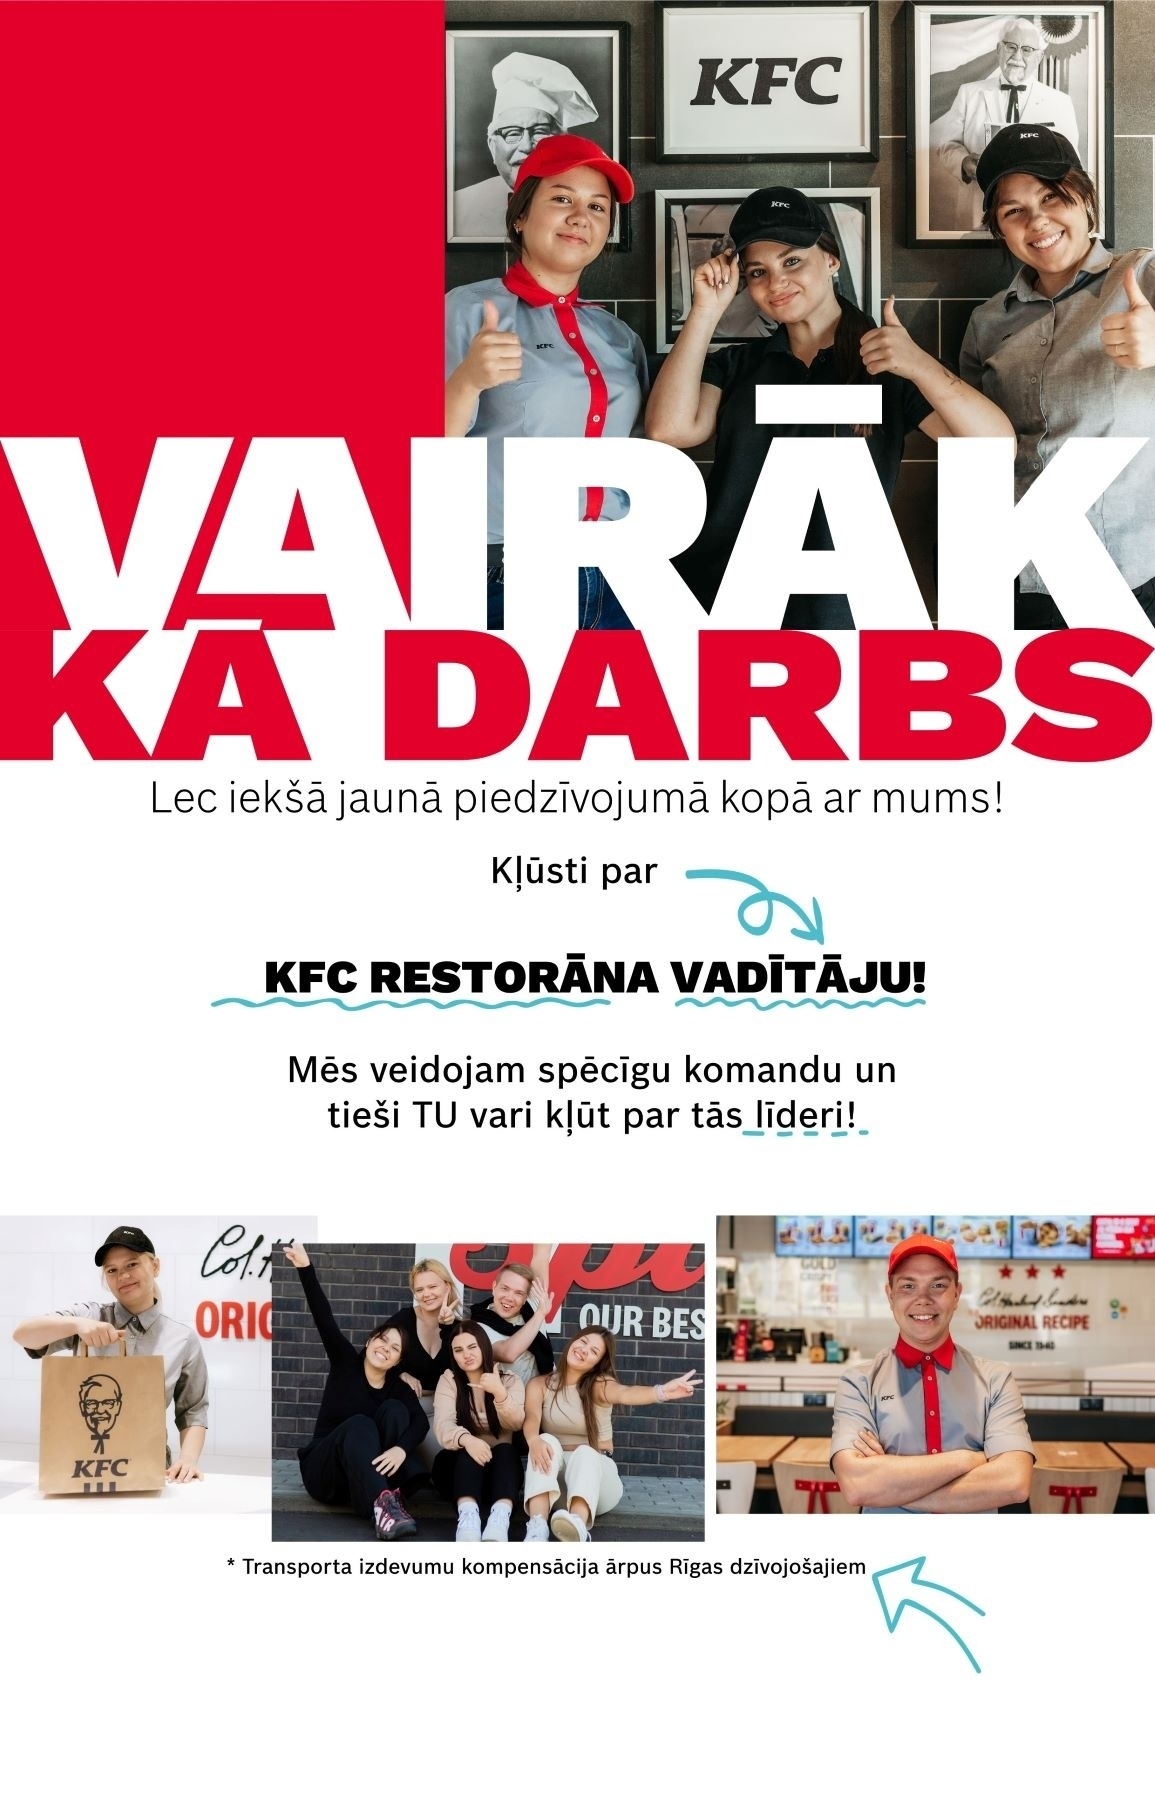 KFC "KFC" restorāna vadītājs/-a, TC Akropole Rīga